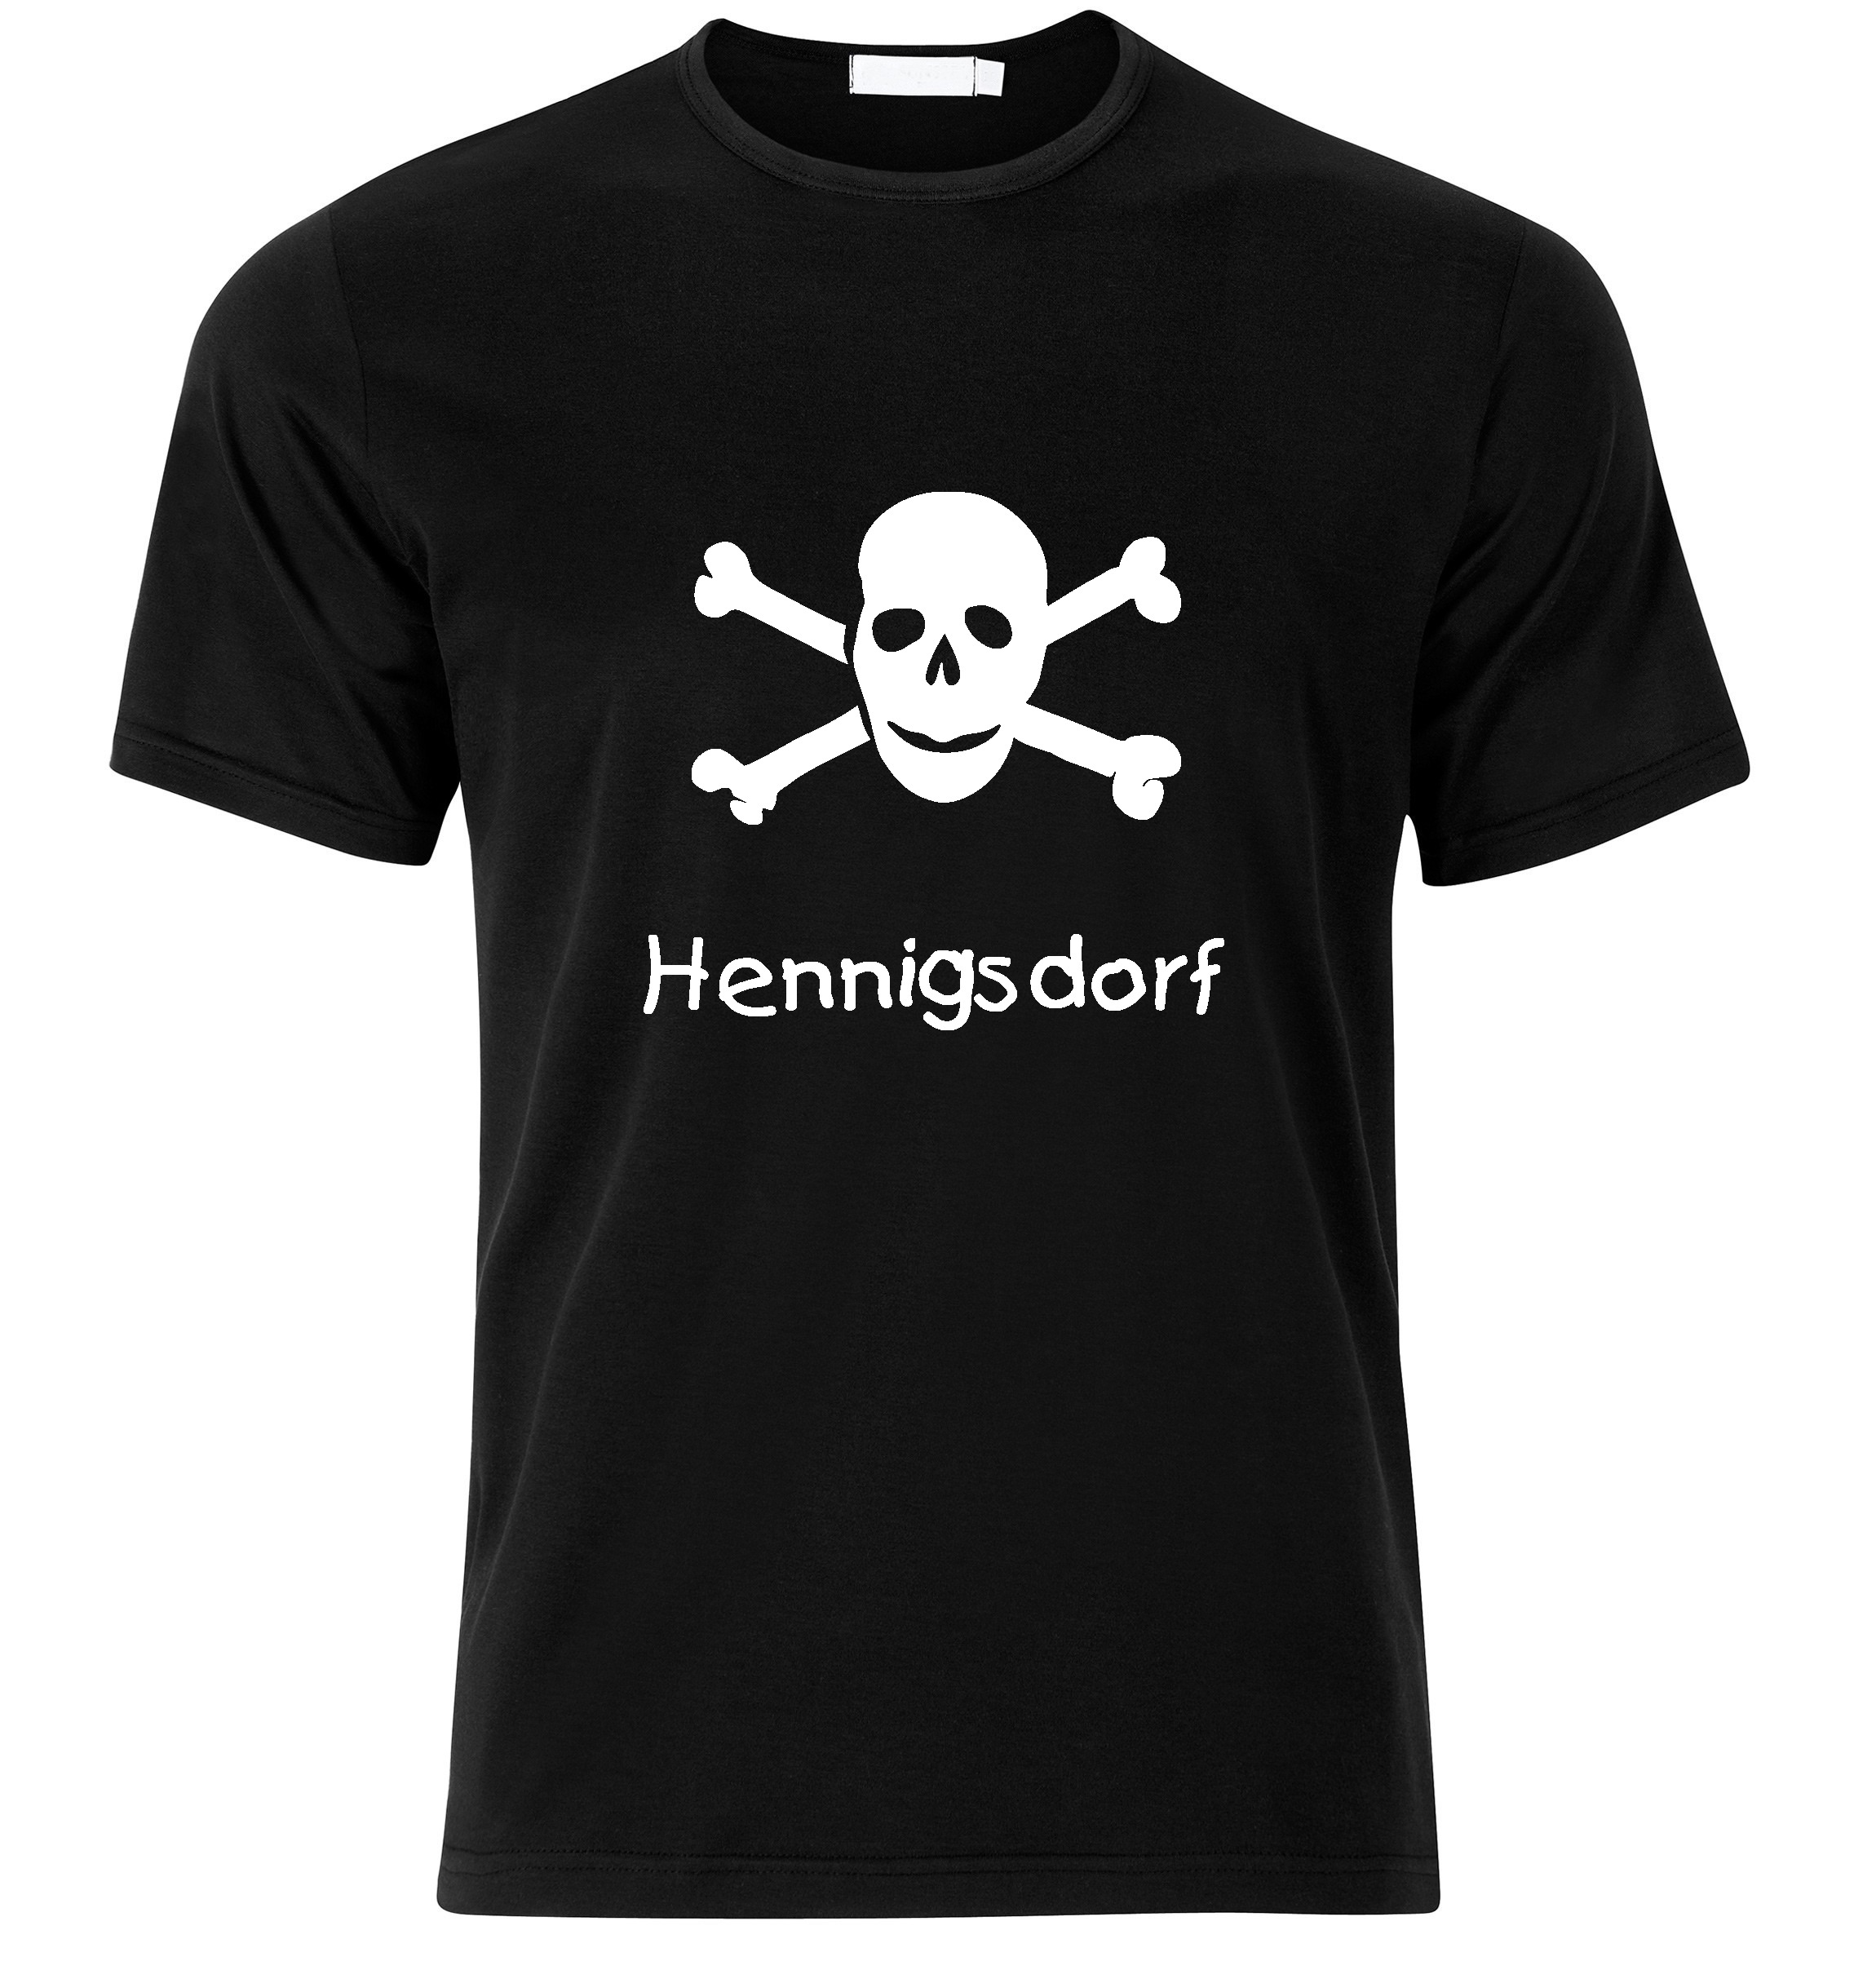 T-Shirt Hennigsdorf Jolly Roger, Totenkopf